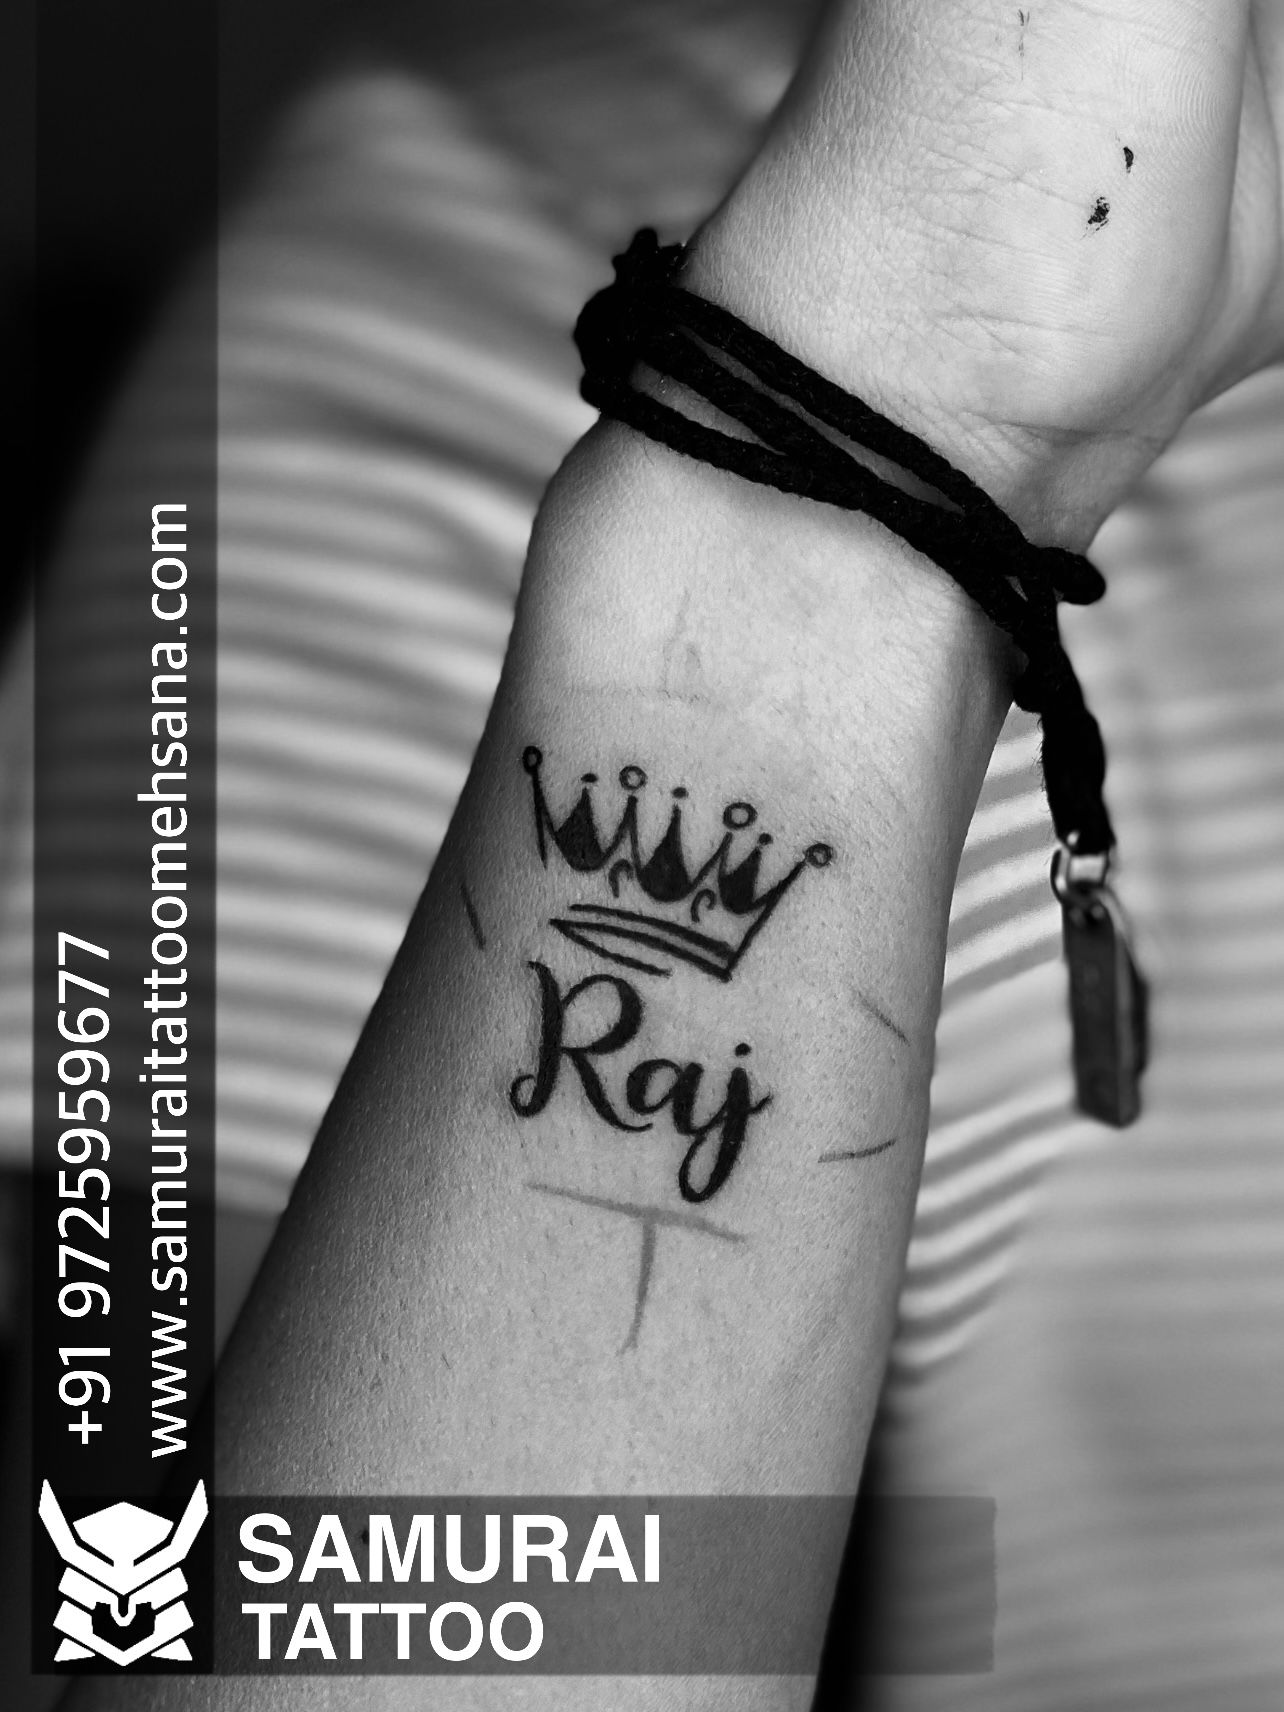 Raju tattoo Name design trending tattoo name design - YouTube